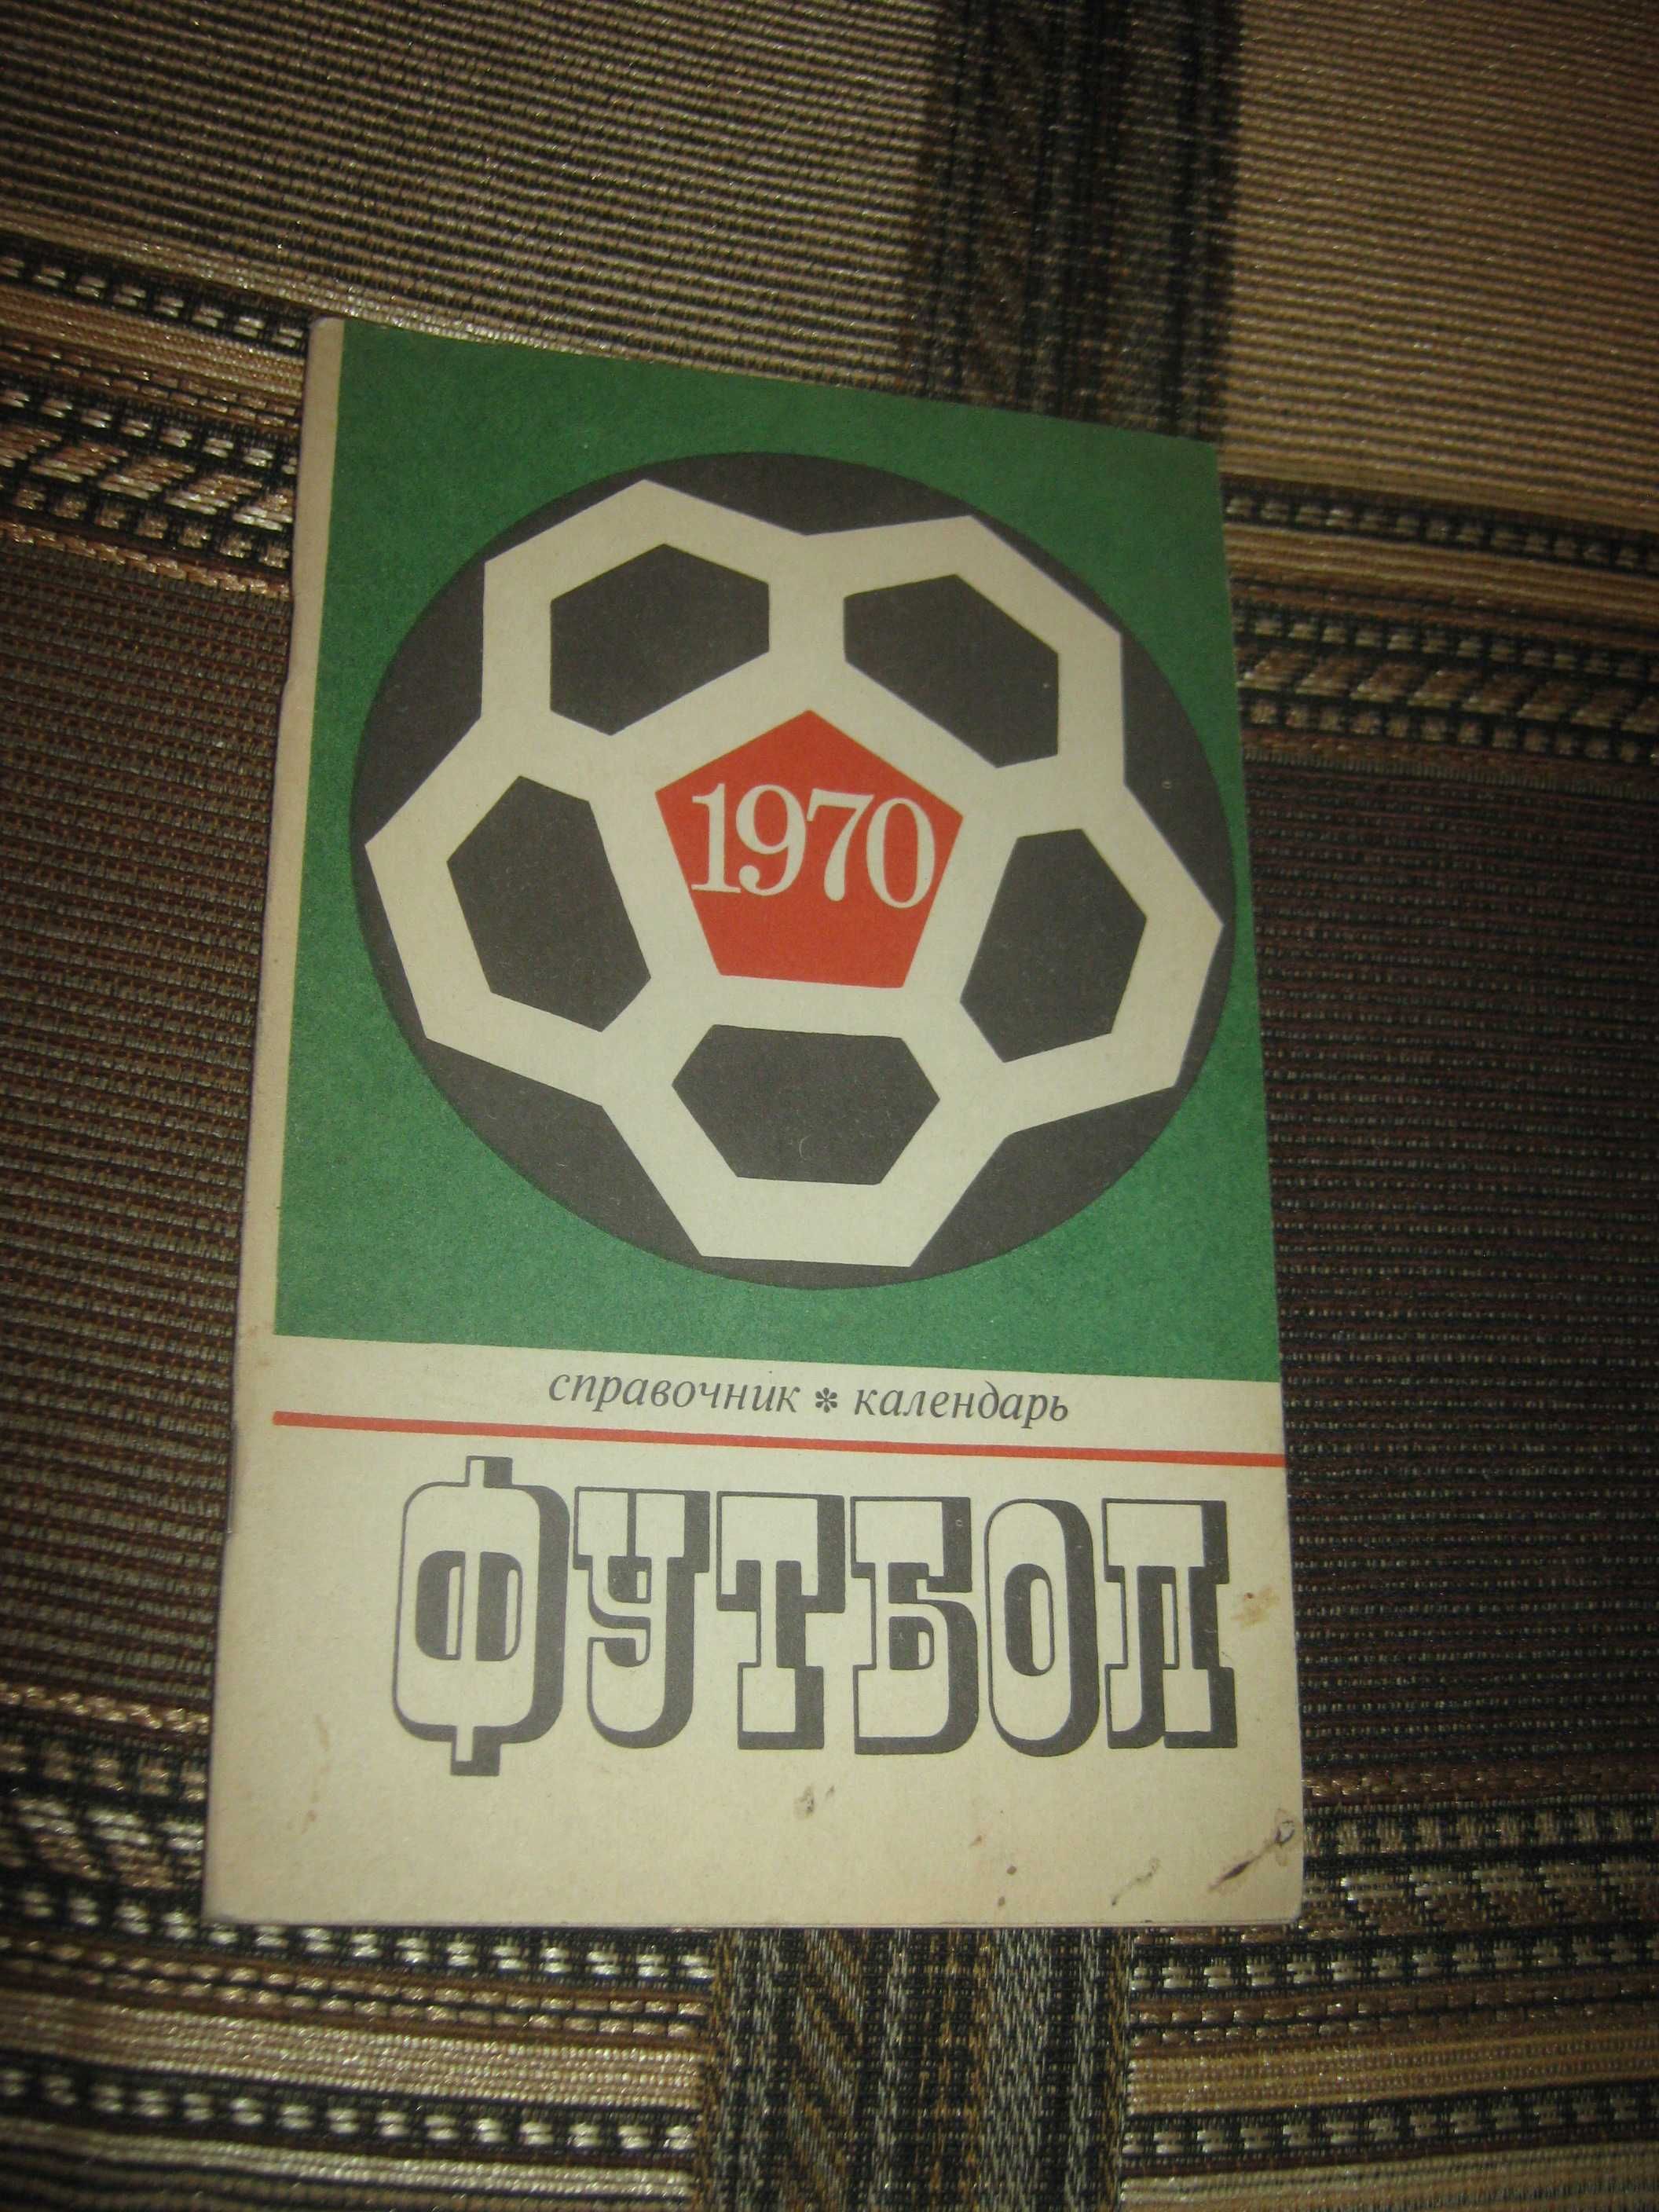 Футбол 1970,справочник